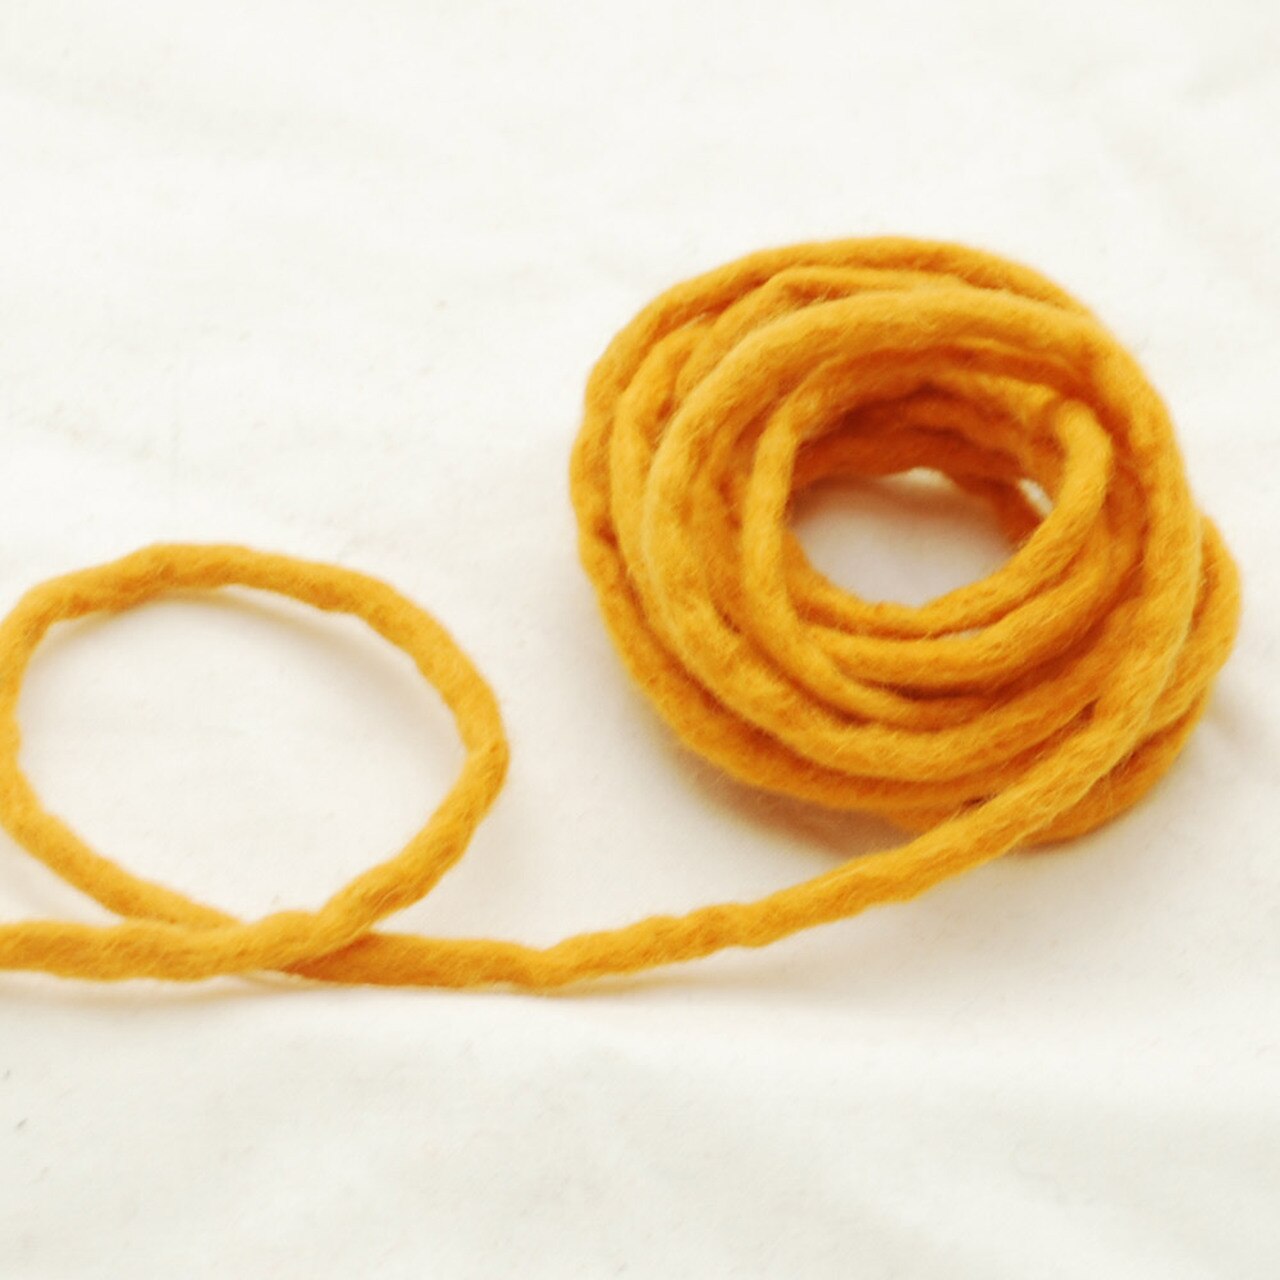 Handmade 100% Wool Felt Cord - Orange